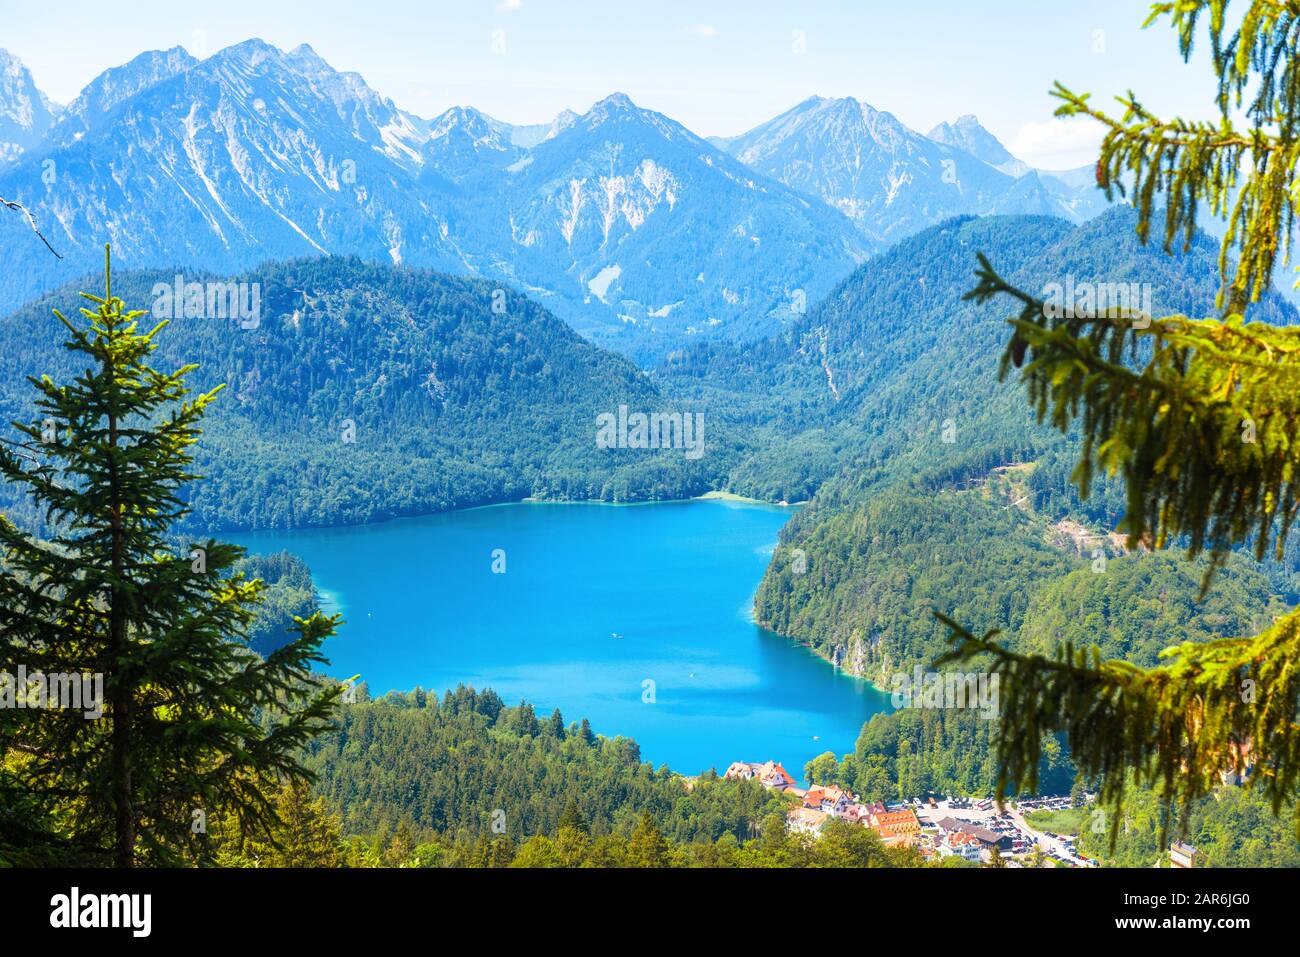 Paysage des montagnes alpines, Allemagne. Belle vue panoramique sur la nature d'en haut. Beau paysage avec lac Alpsee et village de Hohenschwangau à l'avant Banque D'Images